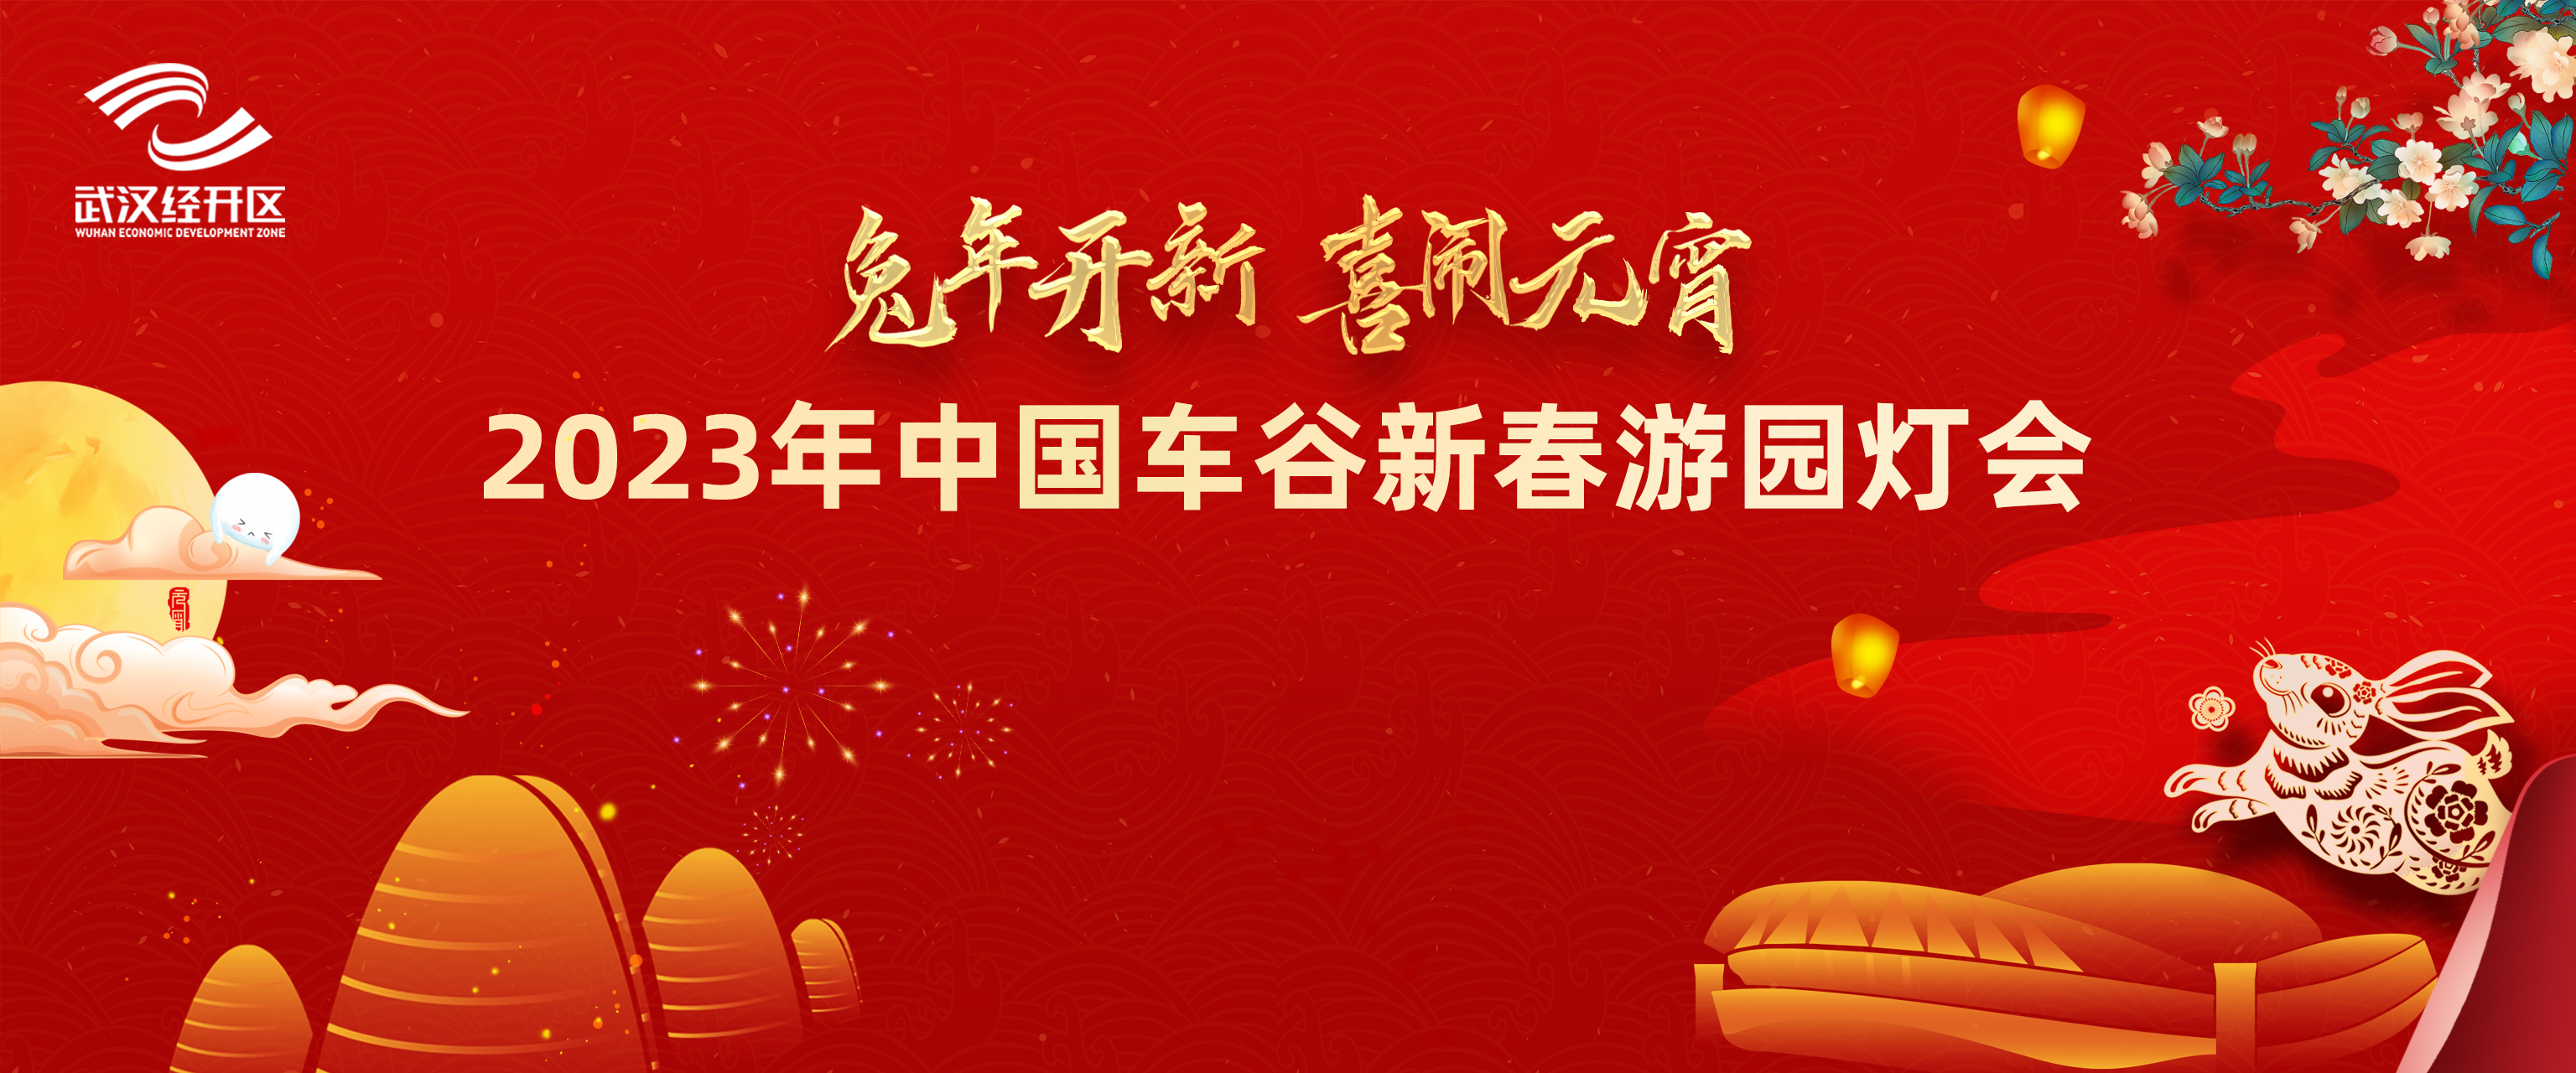 游灯会庆元宵丨中国车谷新春游园灯会，快来体验非遗文化、品尝特色美食，还有千份礼品赠送！